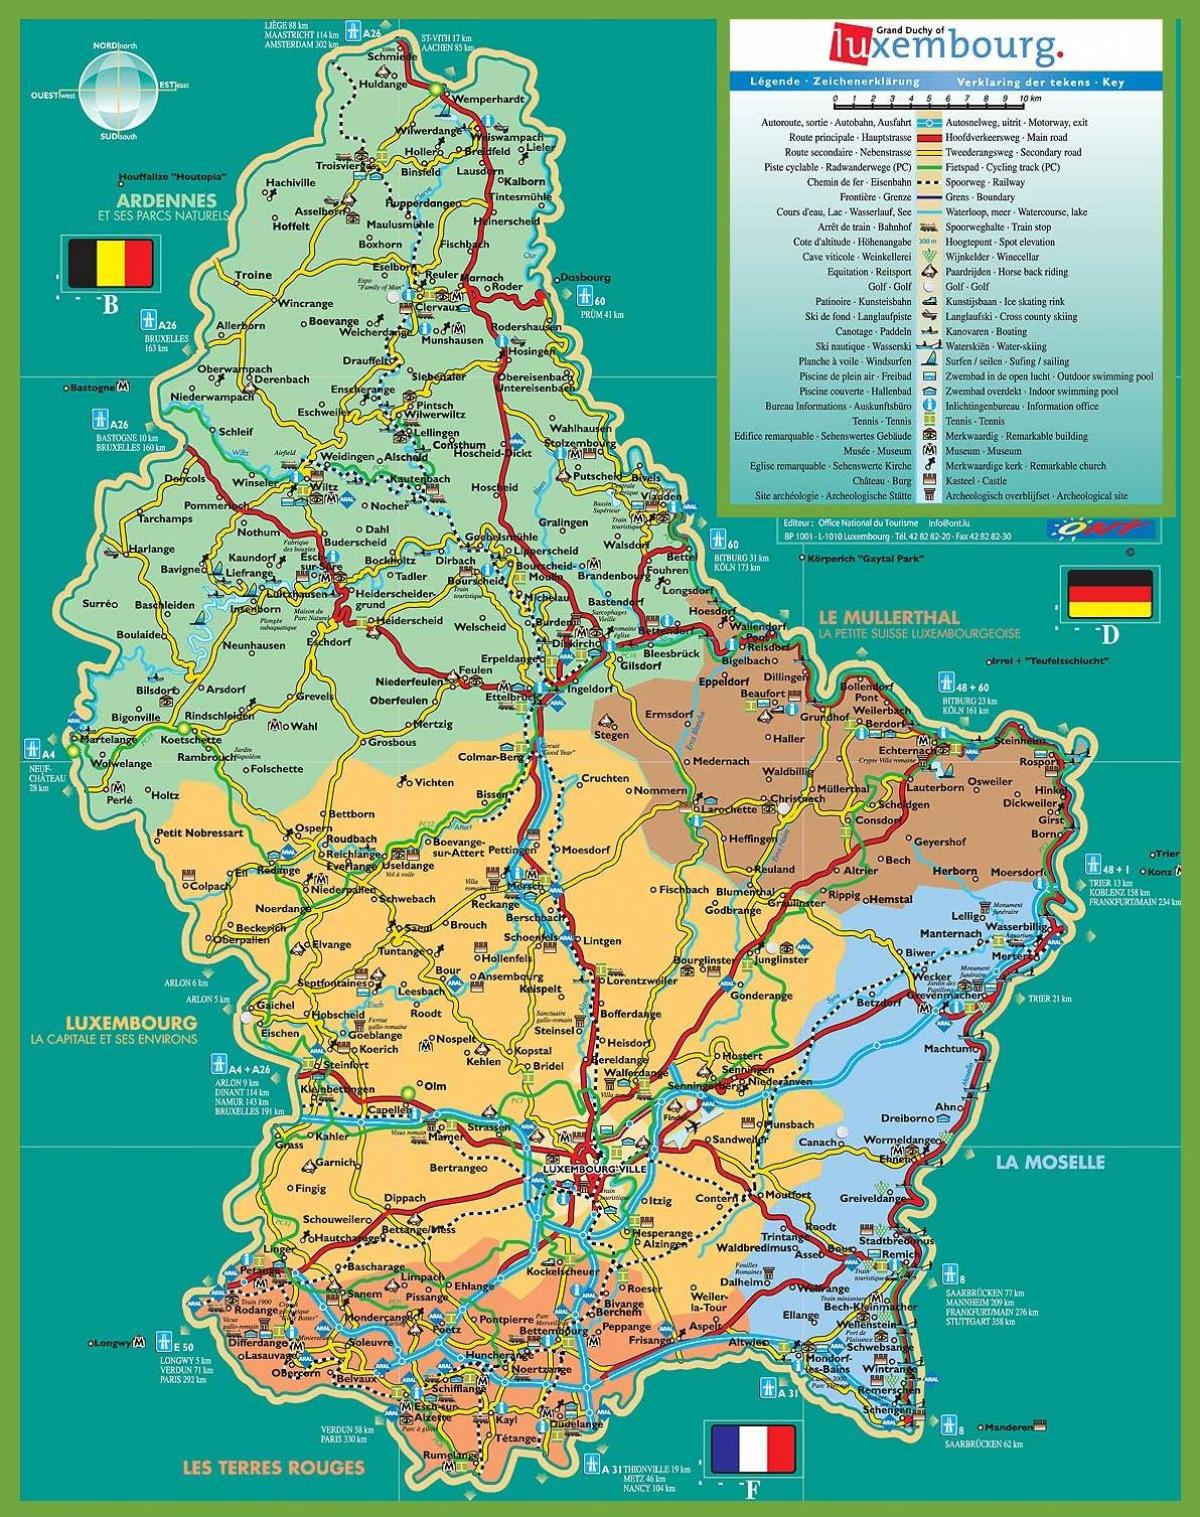 Luksemburgu tërheqjet hartë